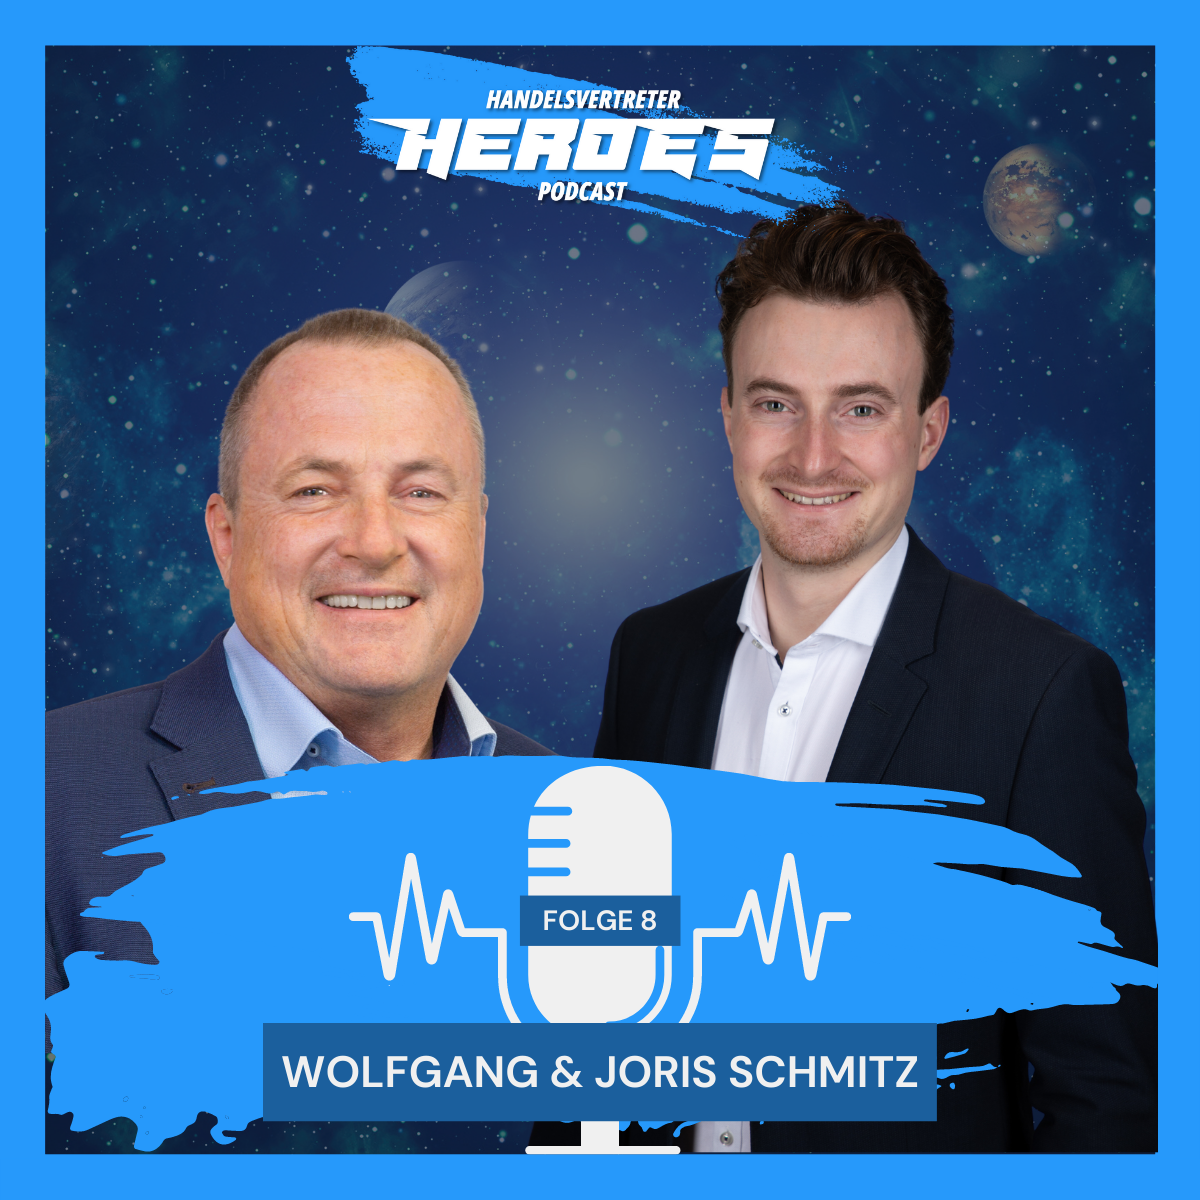 Capa International: Erfolgreicher Generationenwechsel - Wolfgang & Joris Schmitz Folge 8